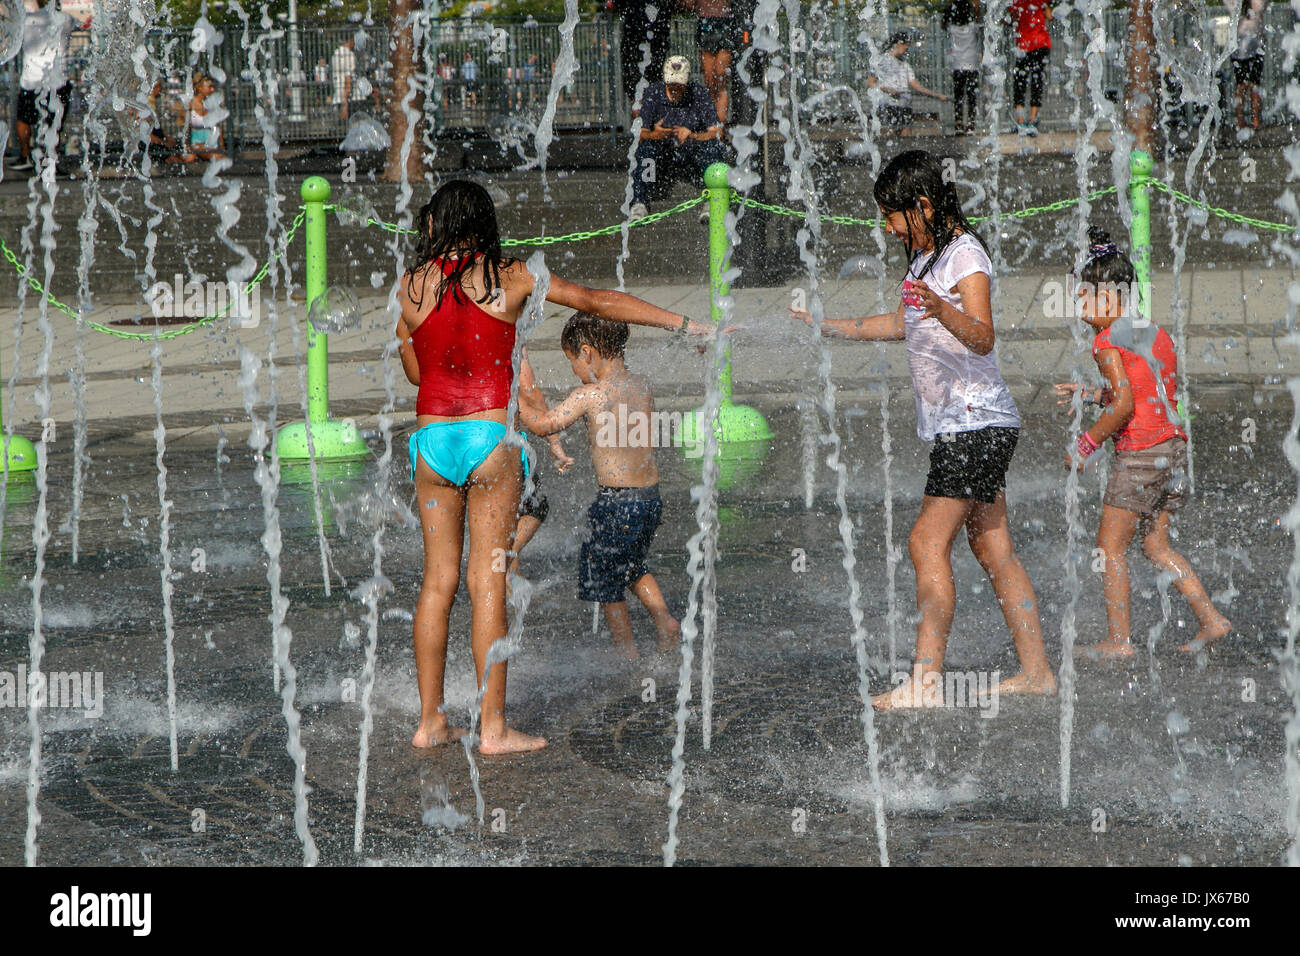 Les enfants obtiennent trempé tout en jouant avec une fontaine au cours d'une chaude journée d'été. Banque D'Images